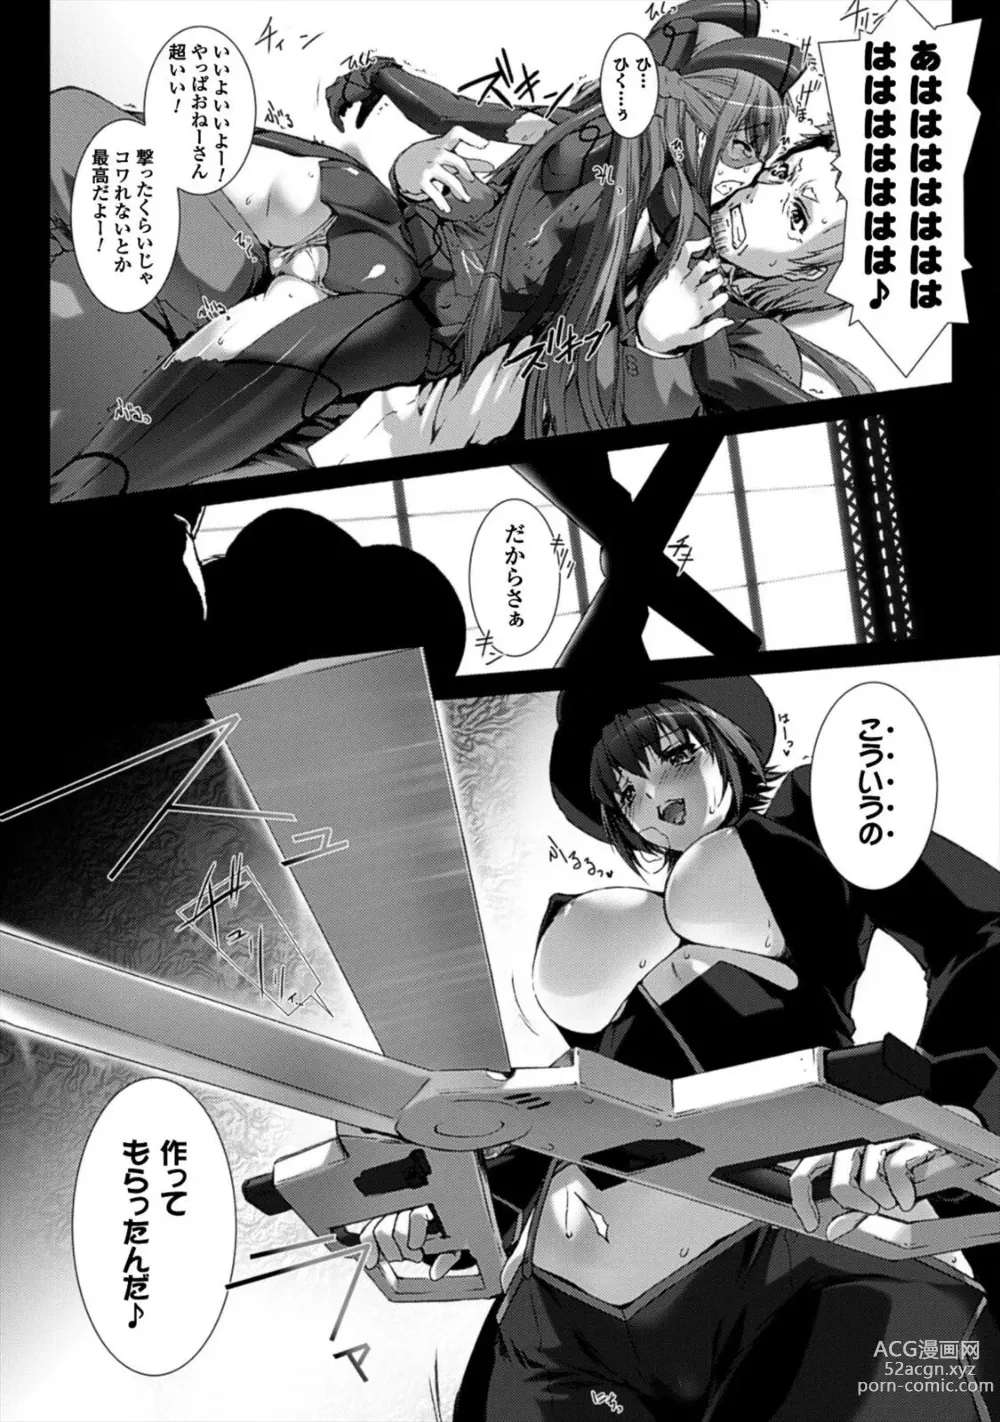 Page 171 of manga Ziggurat 4